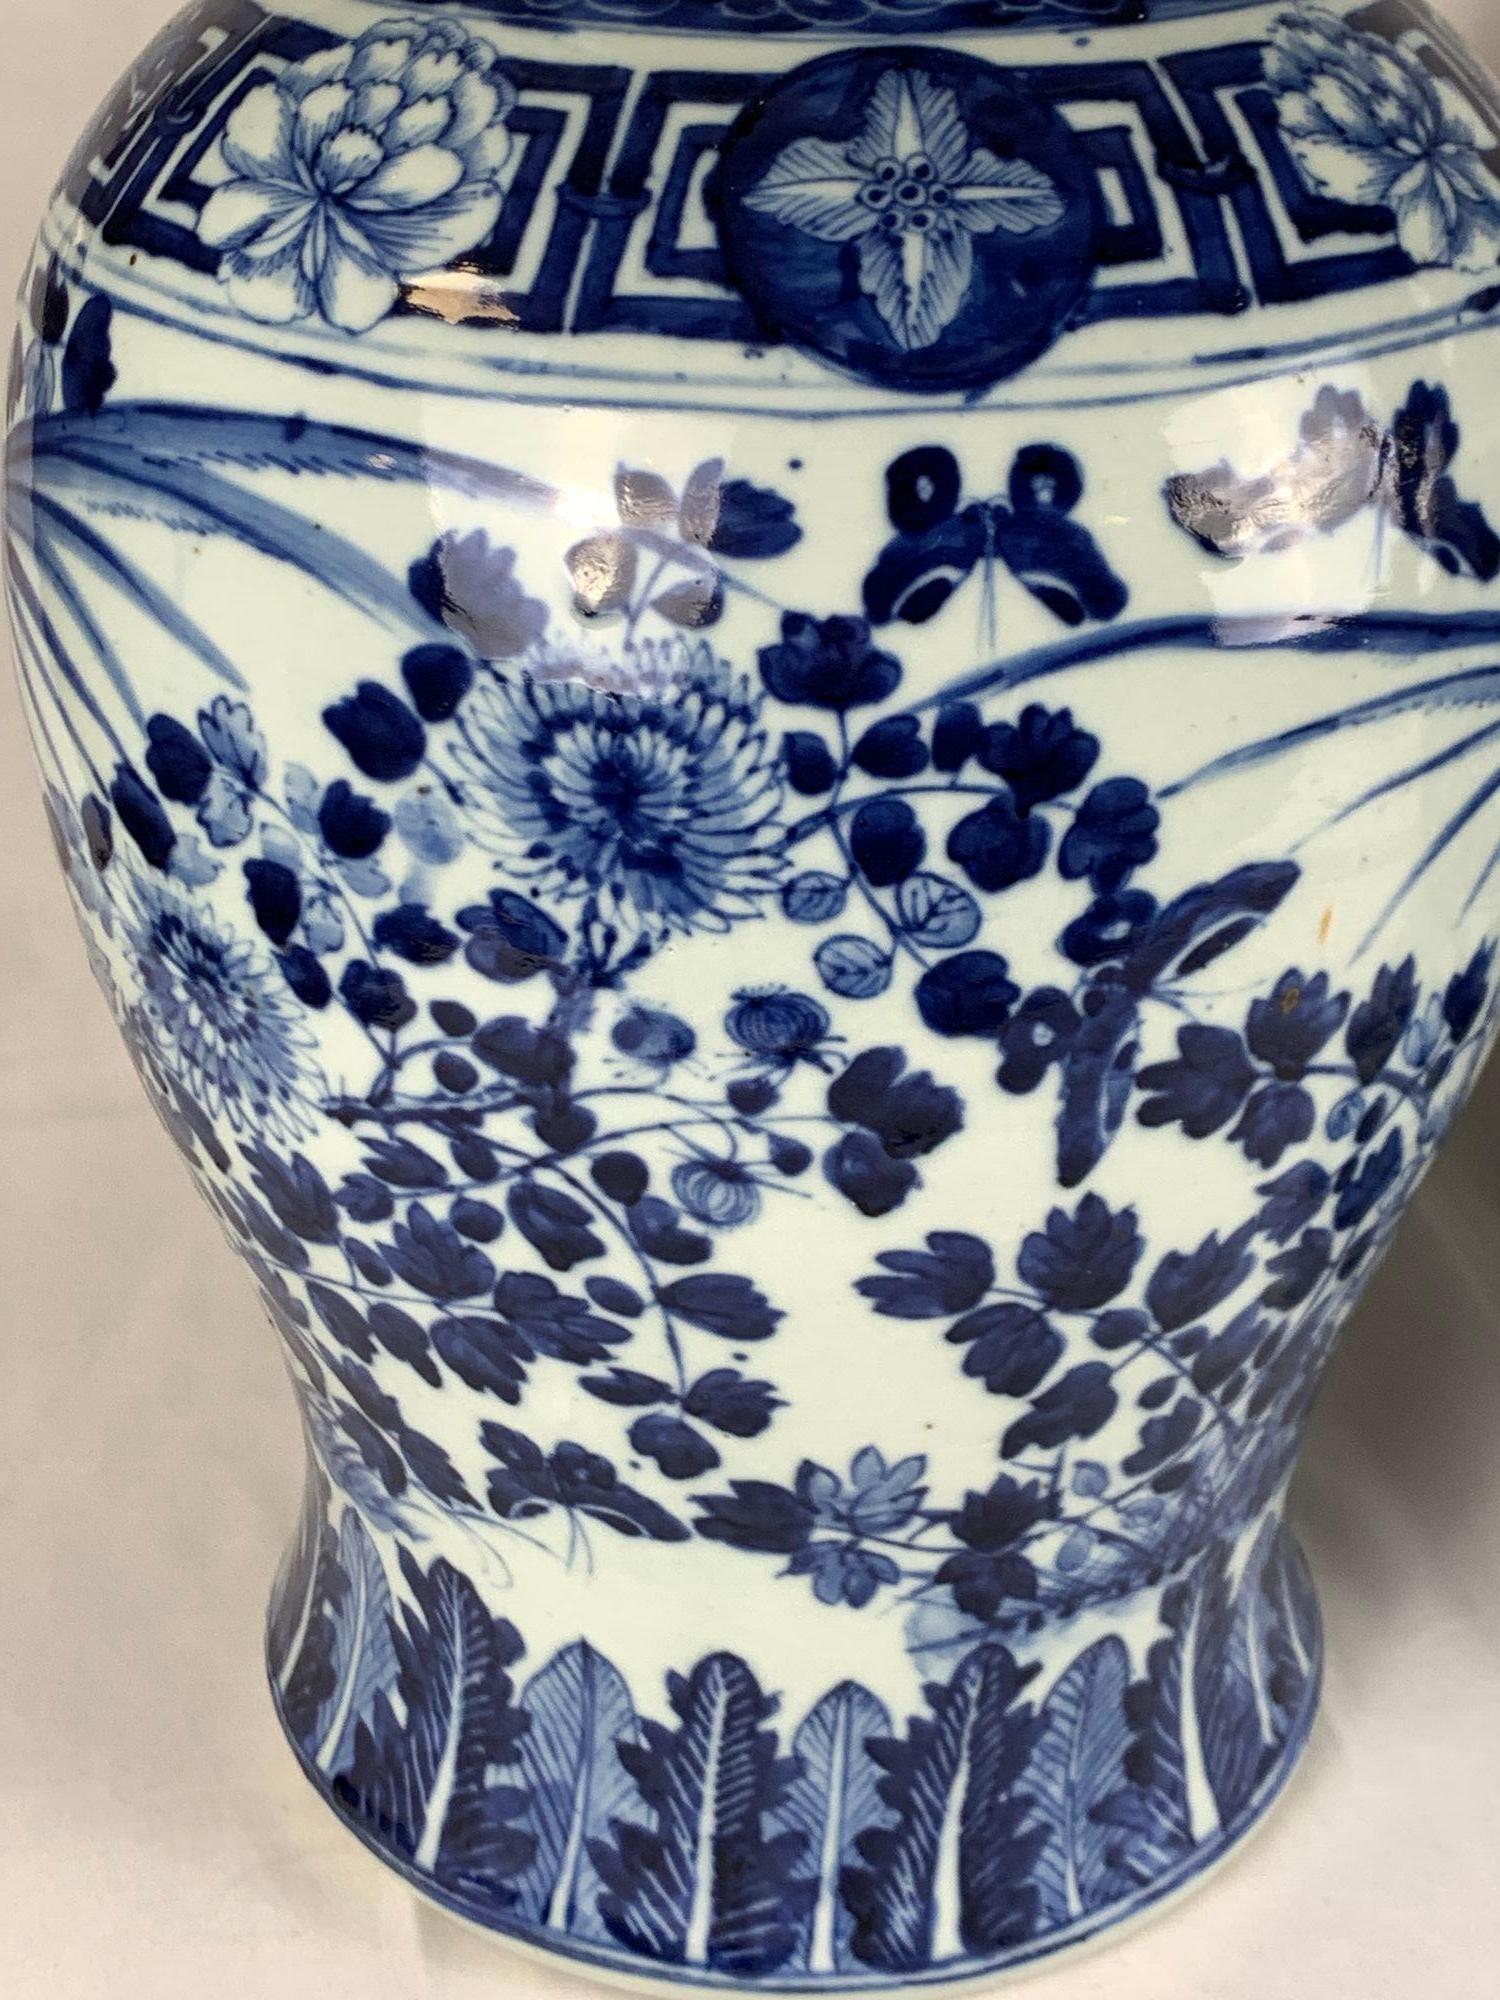 Dieses Paar handbemalter blauer und weißer chinesischer Porzellankrüge wurde in der späten Qing-Dynastie in der Guangxu-Ära um 1880 hergestellt.
Jedes Gefäß ist in Kobaltblautönen handbemalt und zeigt eine fröhliche Szene mit zwei Singvögeln, die in